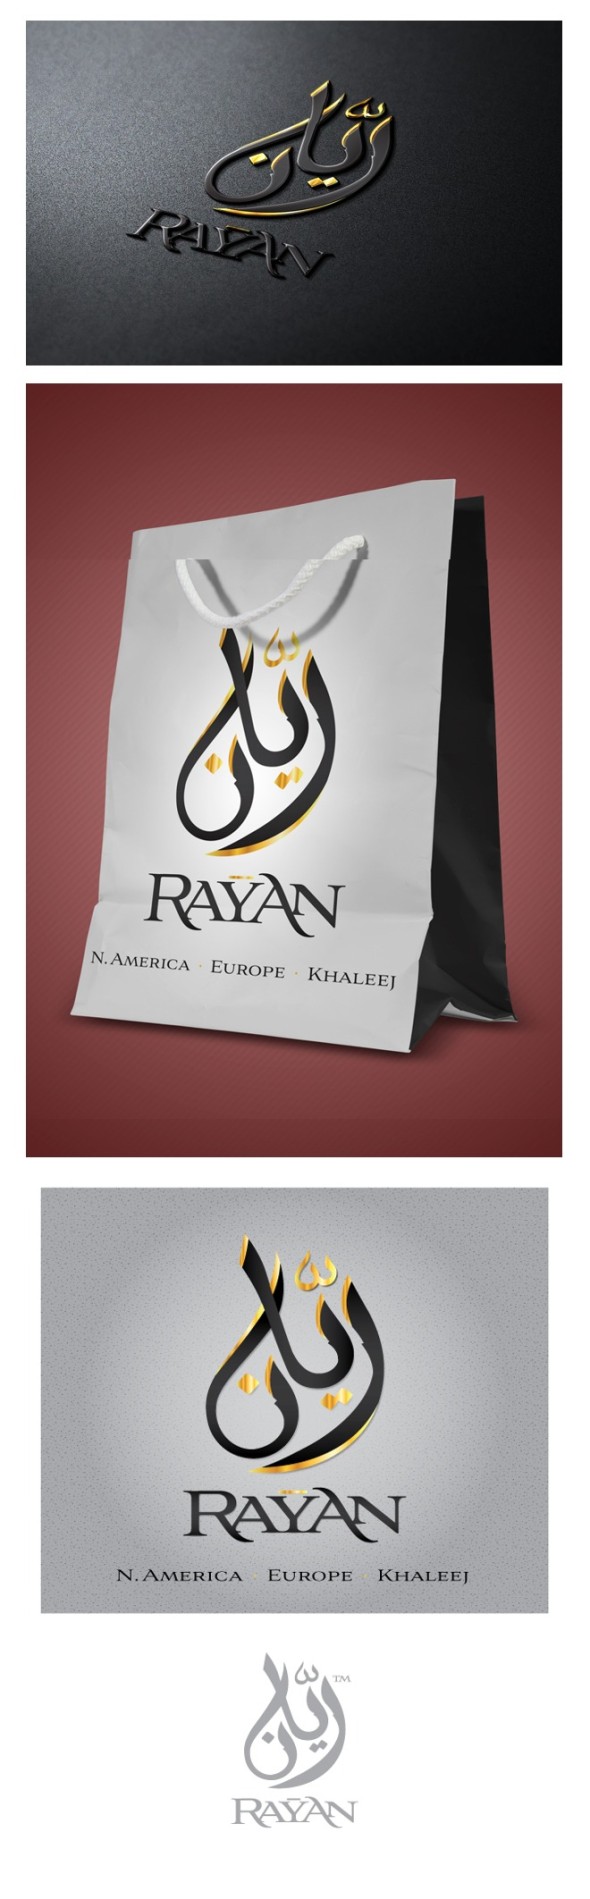 Rayan Arabic Branding